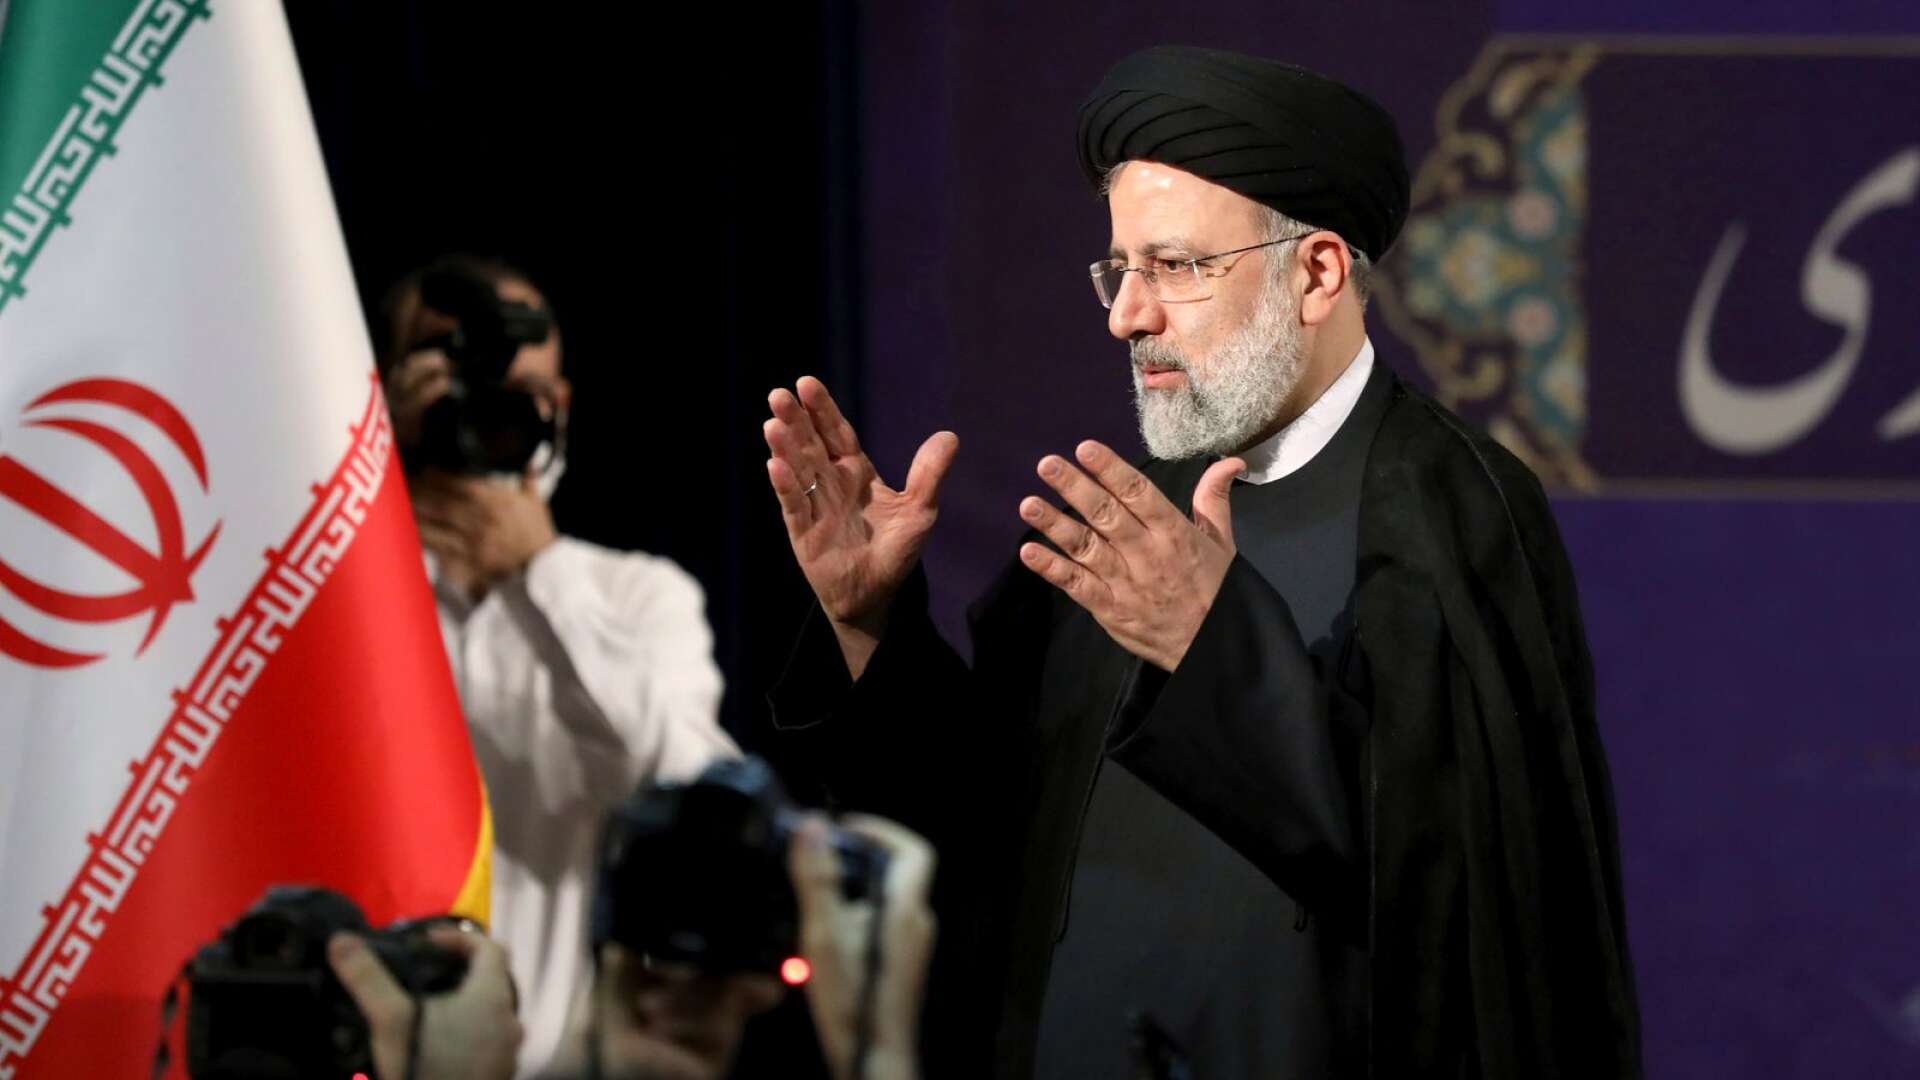 Nu har Väktarrådet på direkta order från Ali Khamenei fattat beslut om att Ebrahim Raisi (bilden) ska bli Irans näste president, skriver Abdolnaser Sadidi.